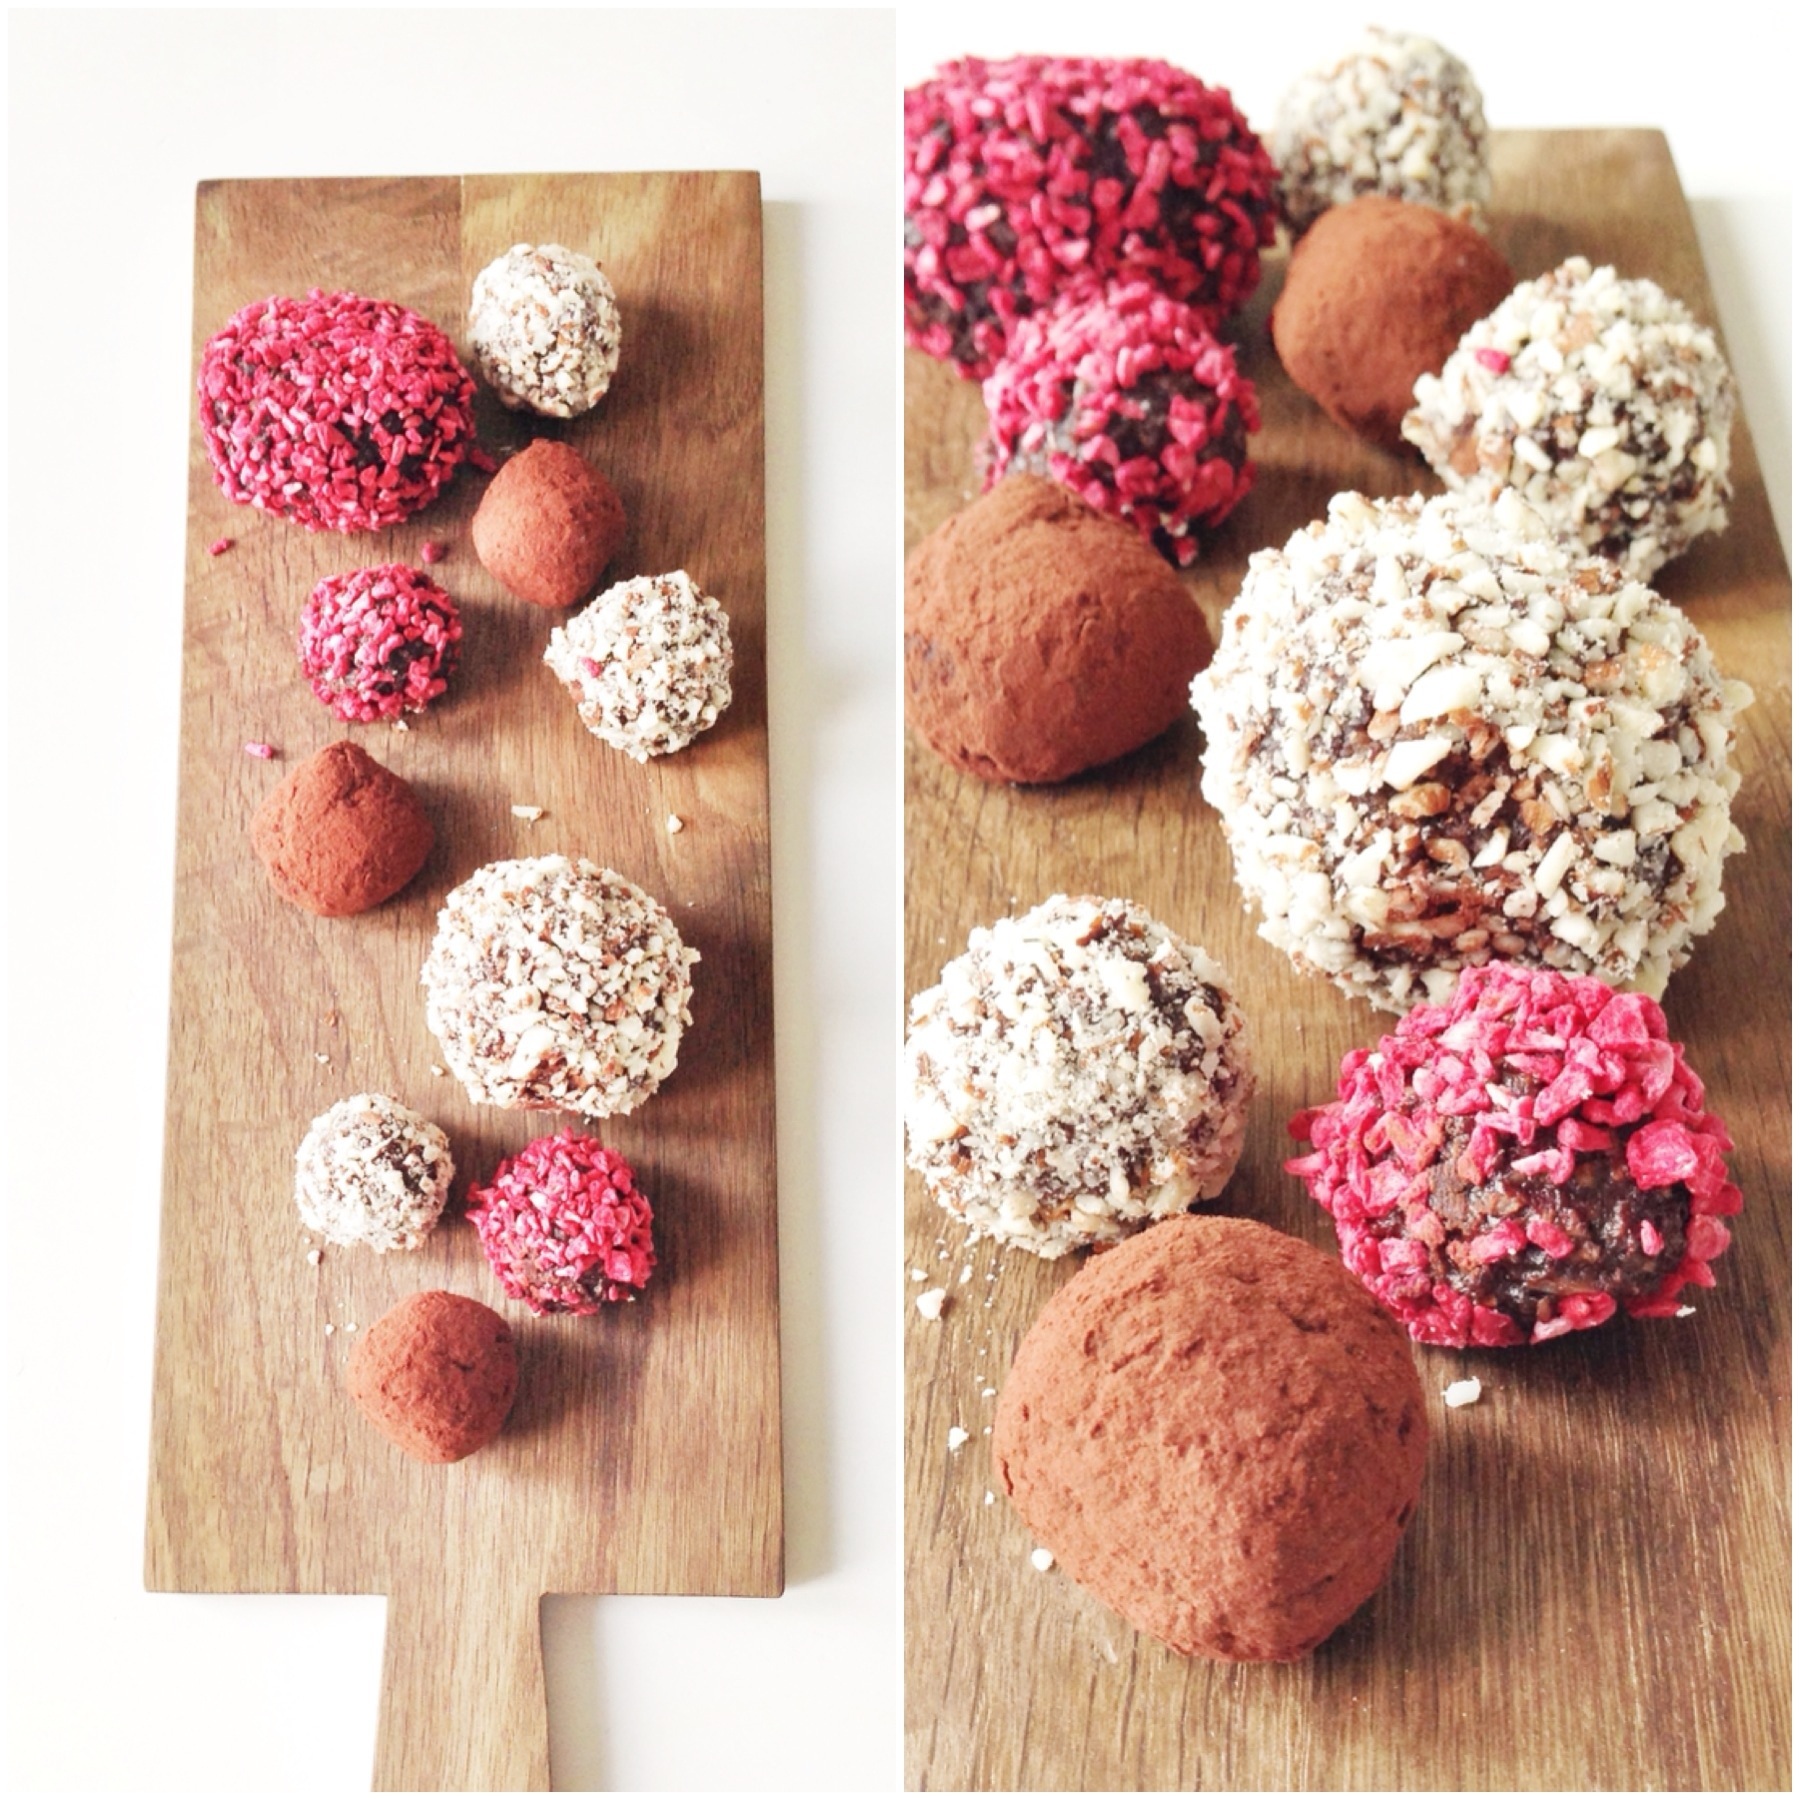 Choko-kugler med nødder, hindbær og kaffe